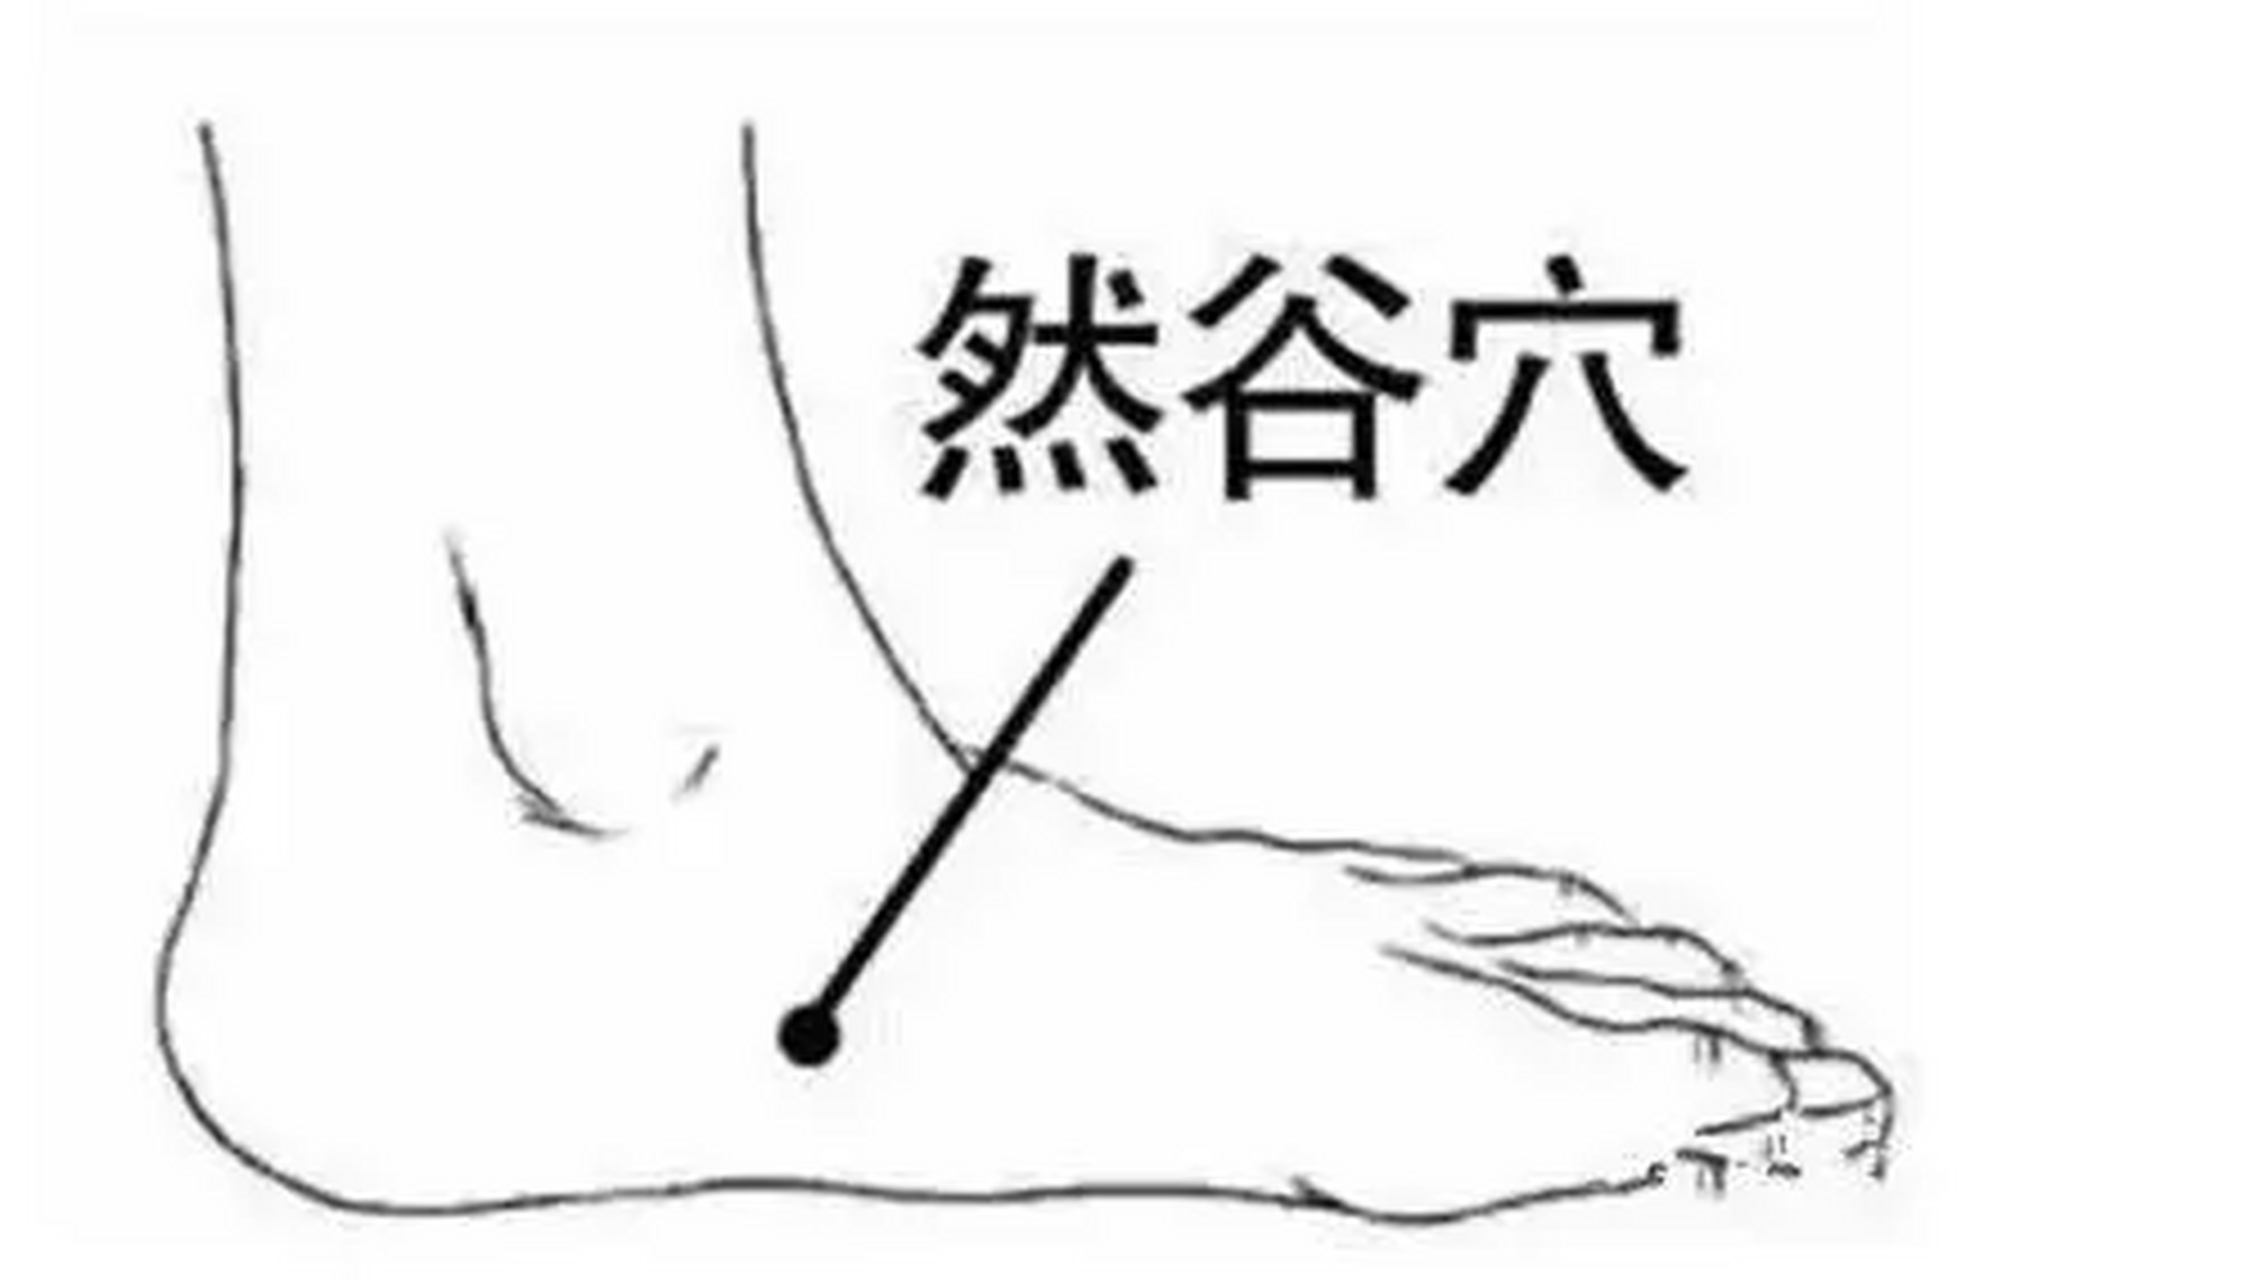 太溪穴 能够清热利湿 大拇指由上往下刮按,过程中会有痛感,建议每天